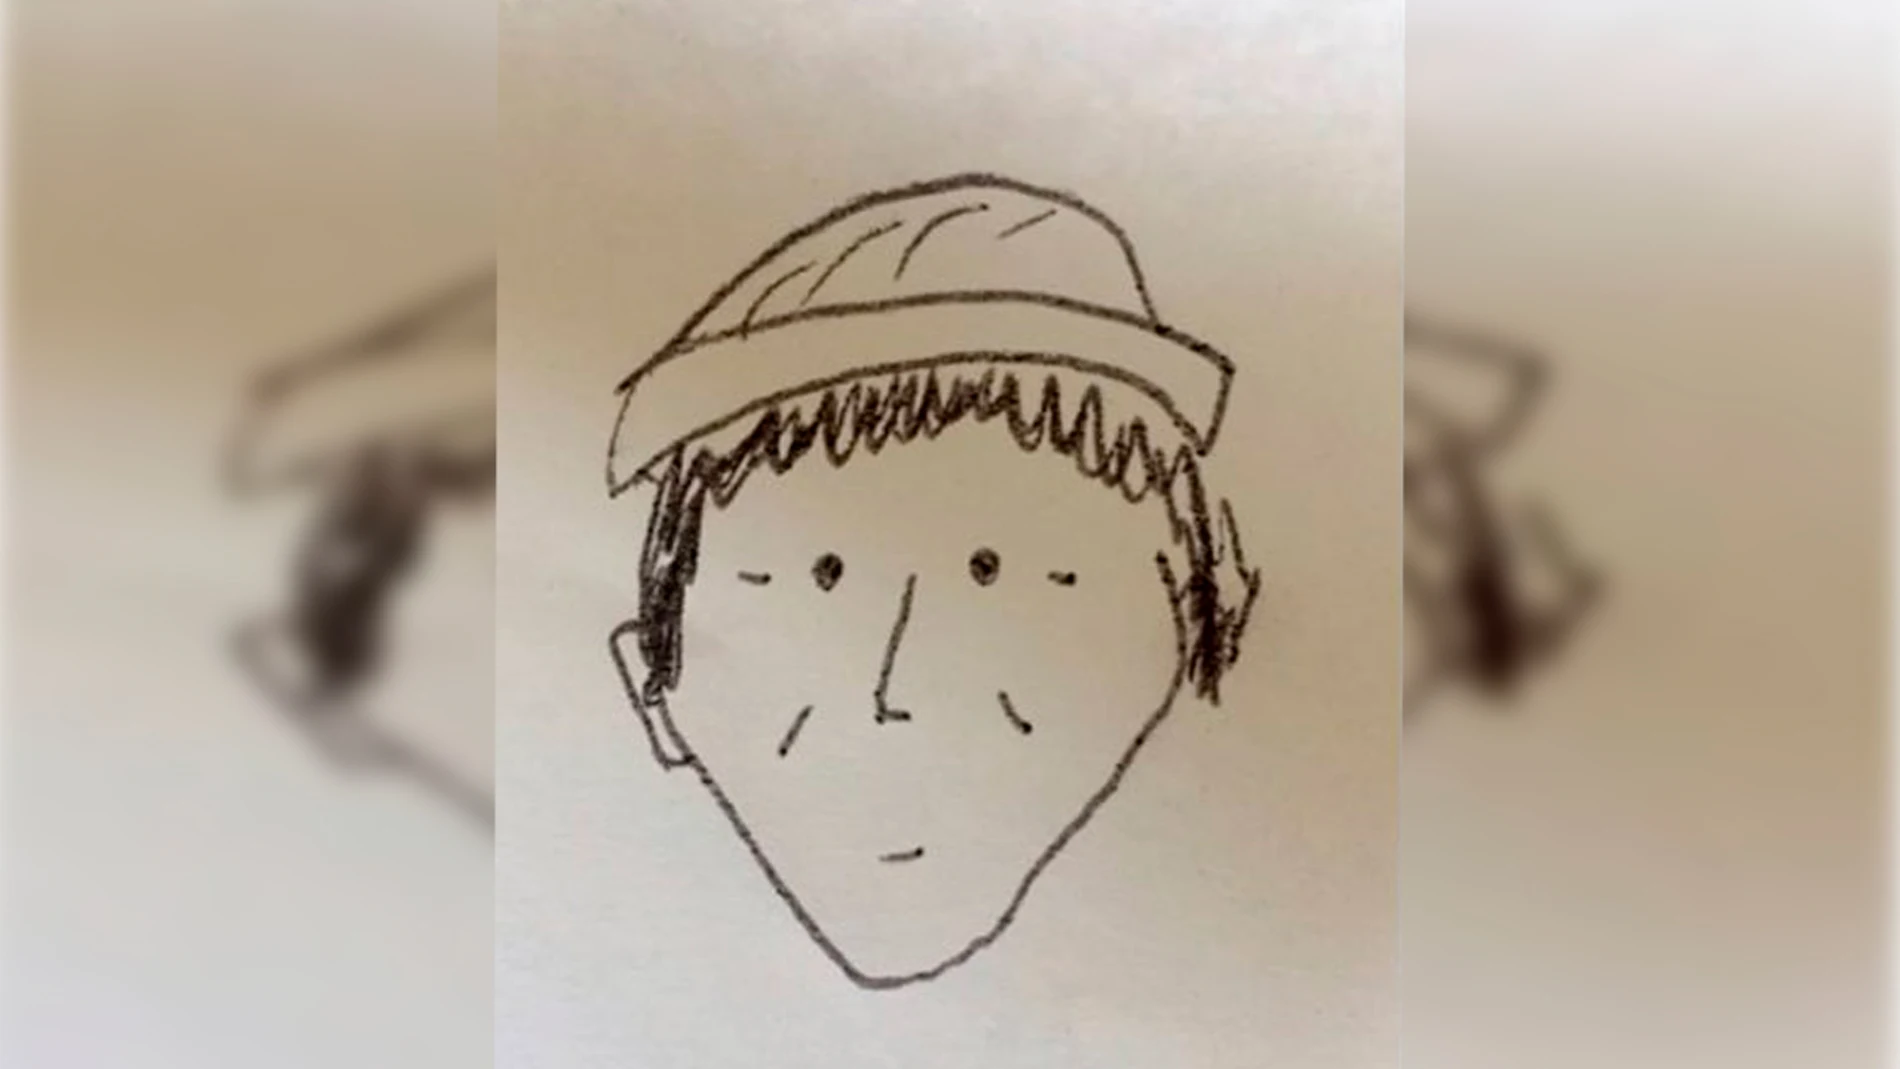 El increíble caso de un delincuente que fue identificado por un boceto infantil 